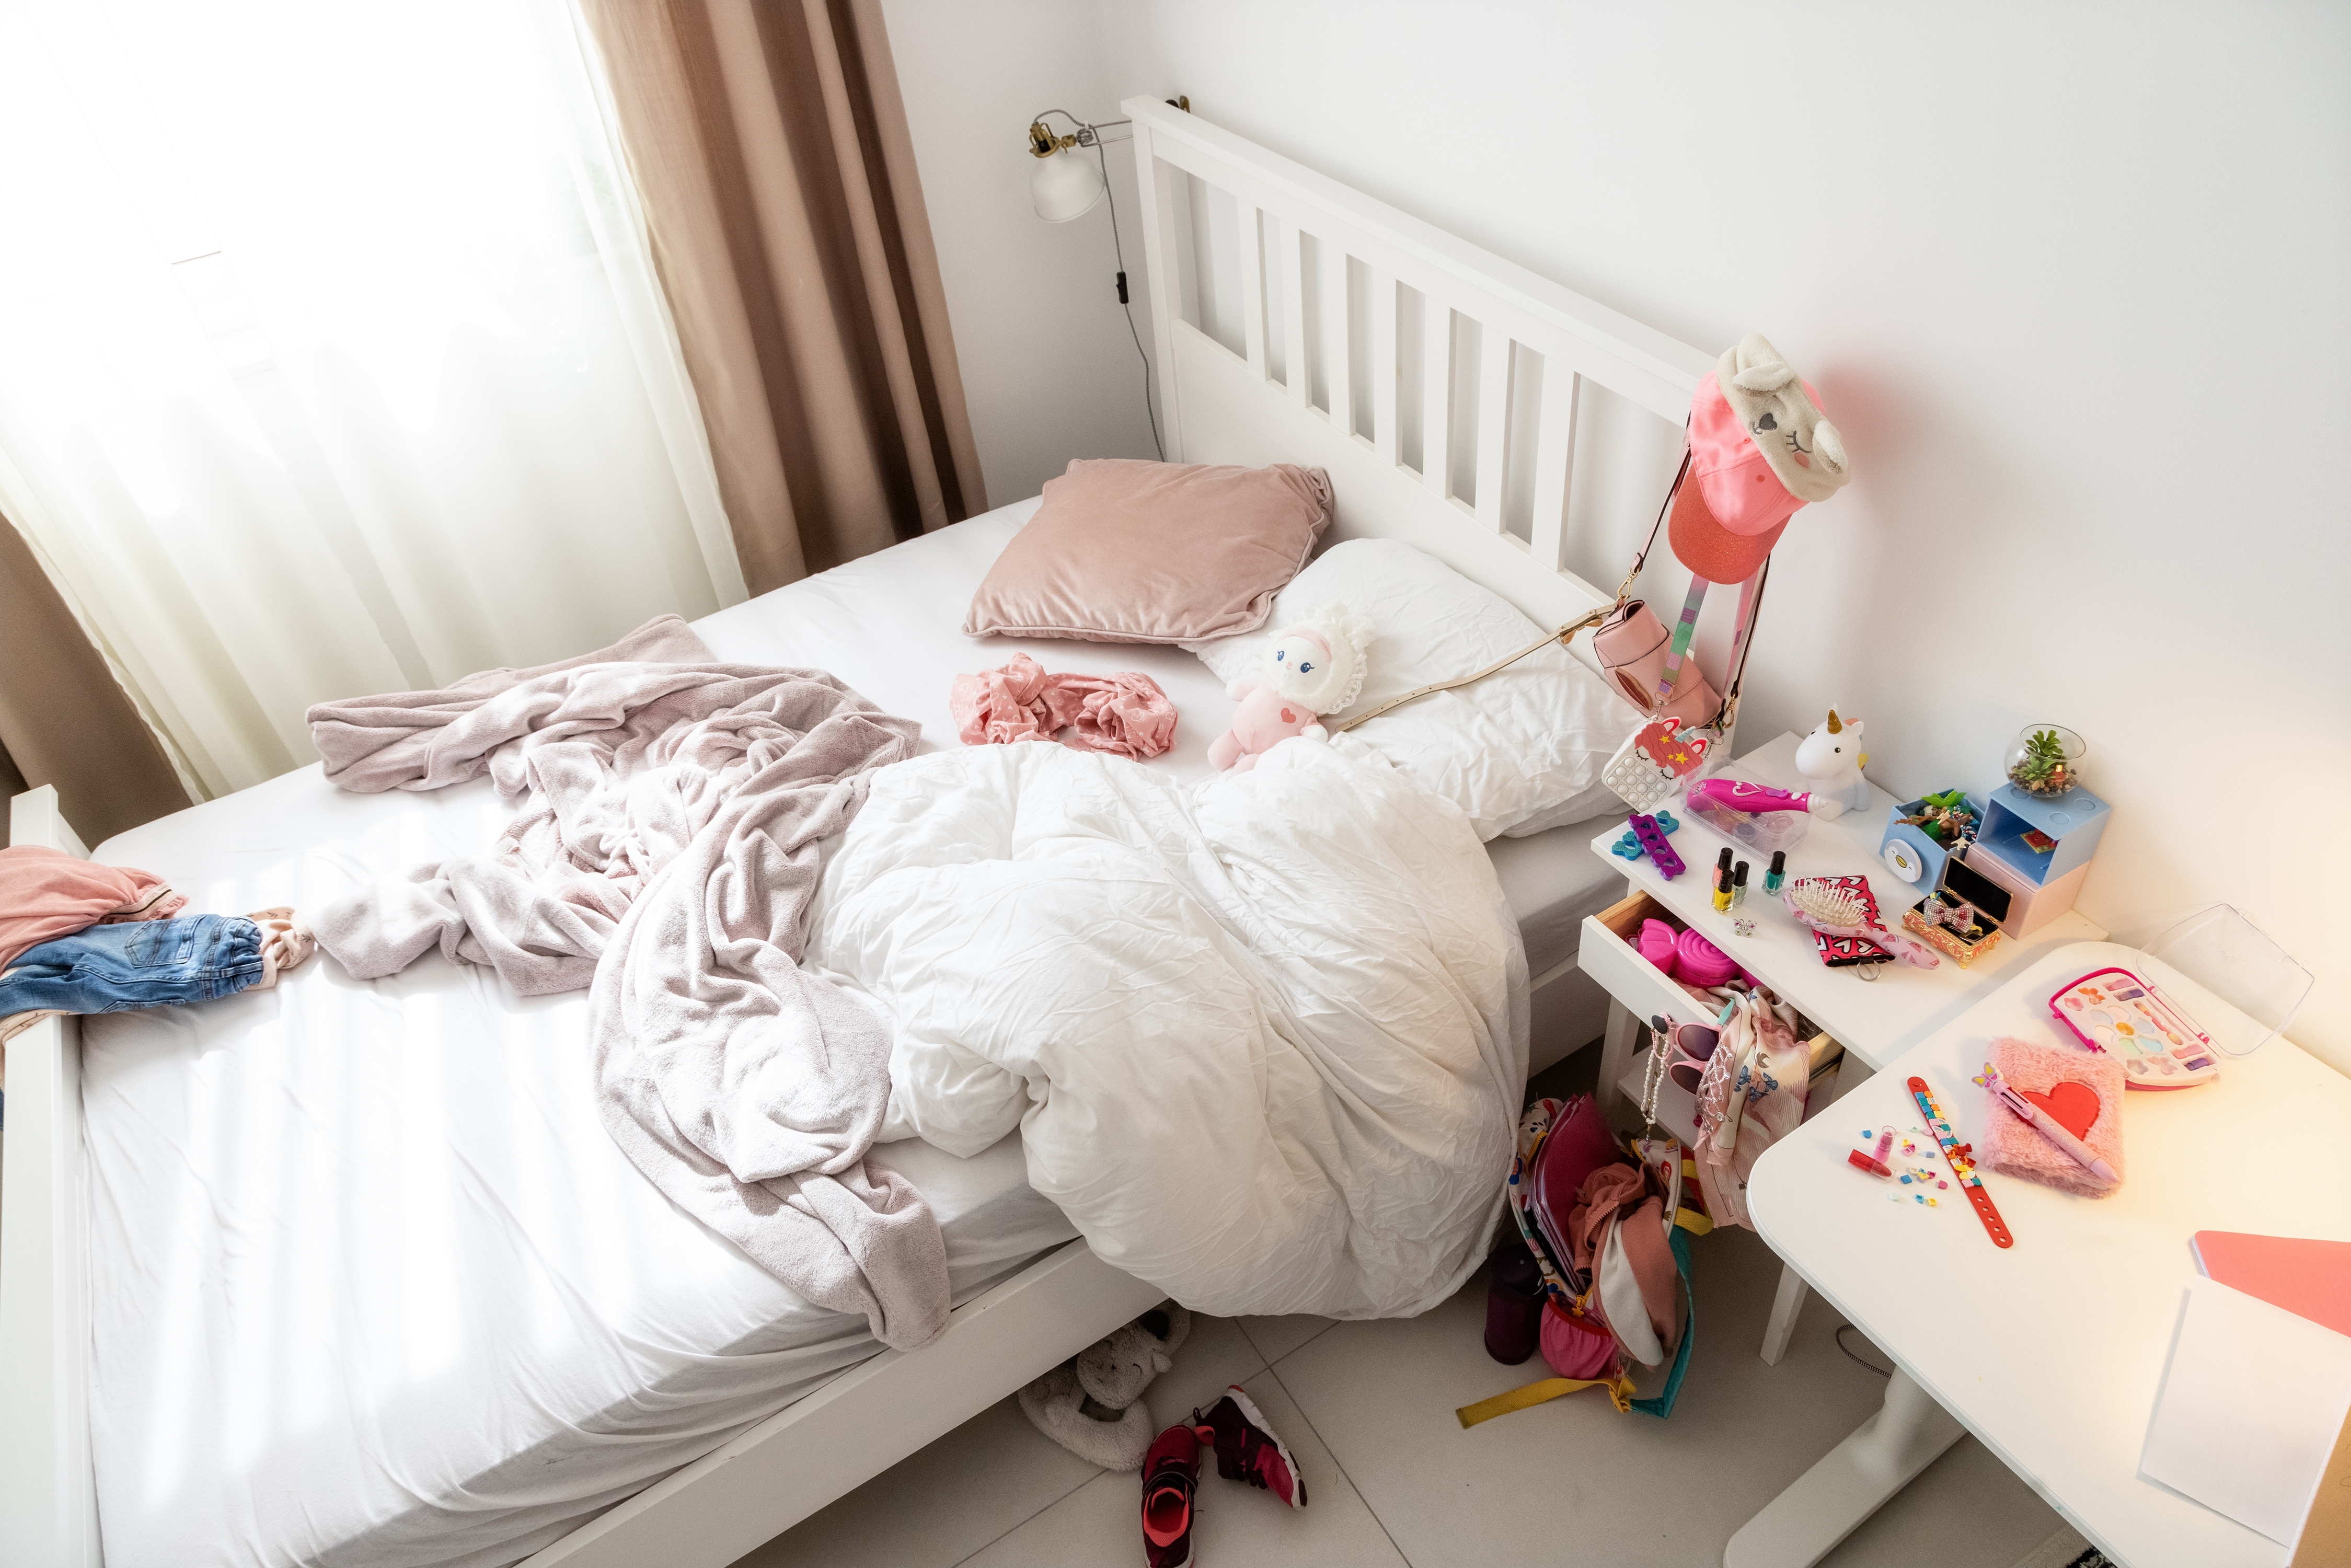 Mess in girl's room.| Source: Shutterstock